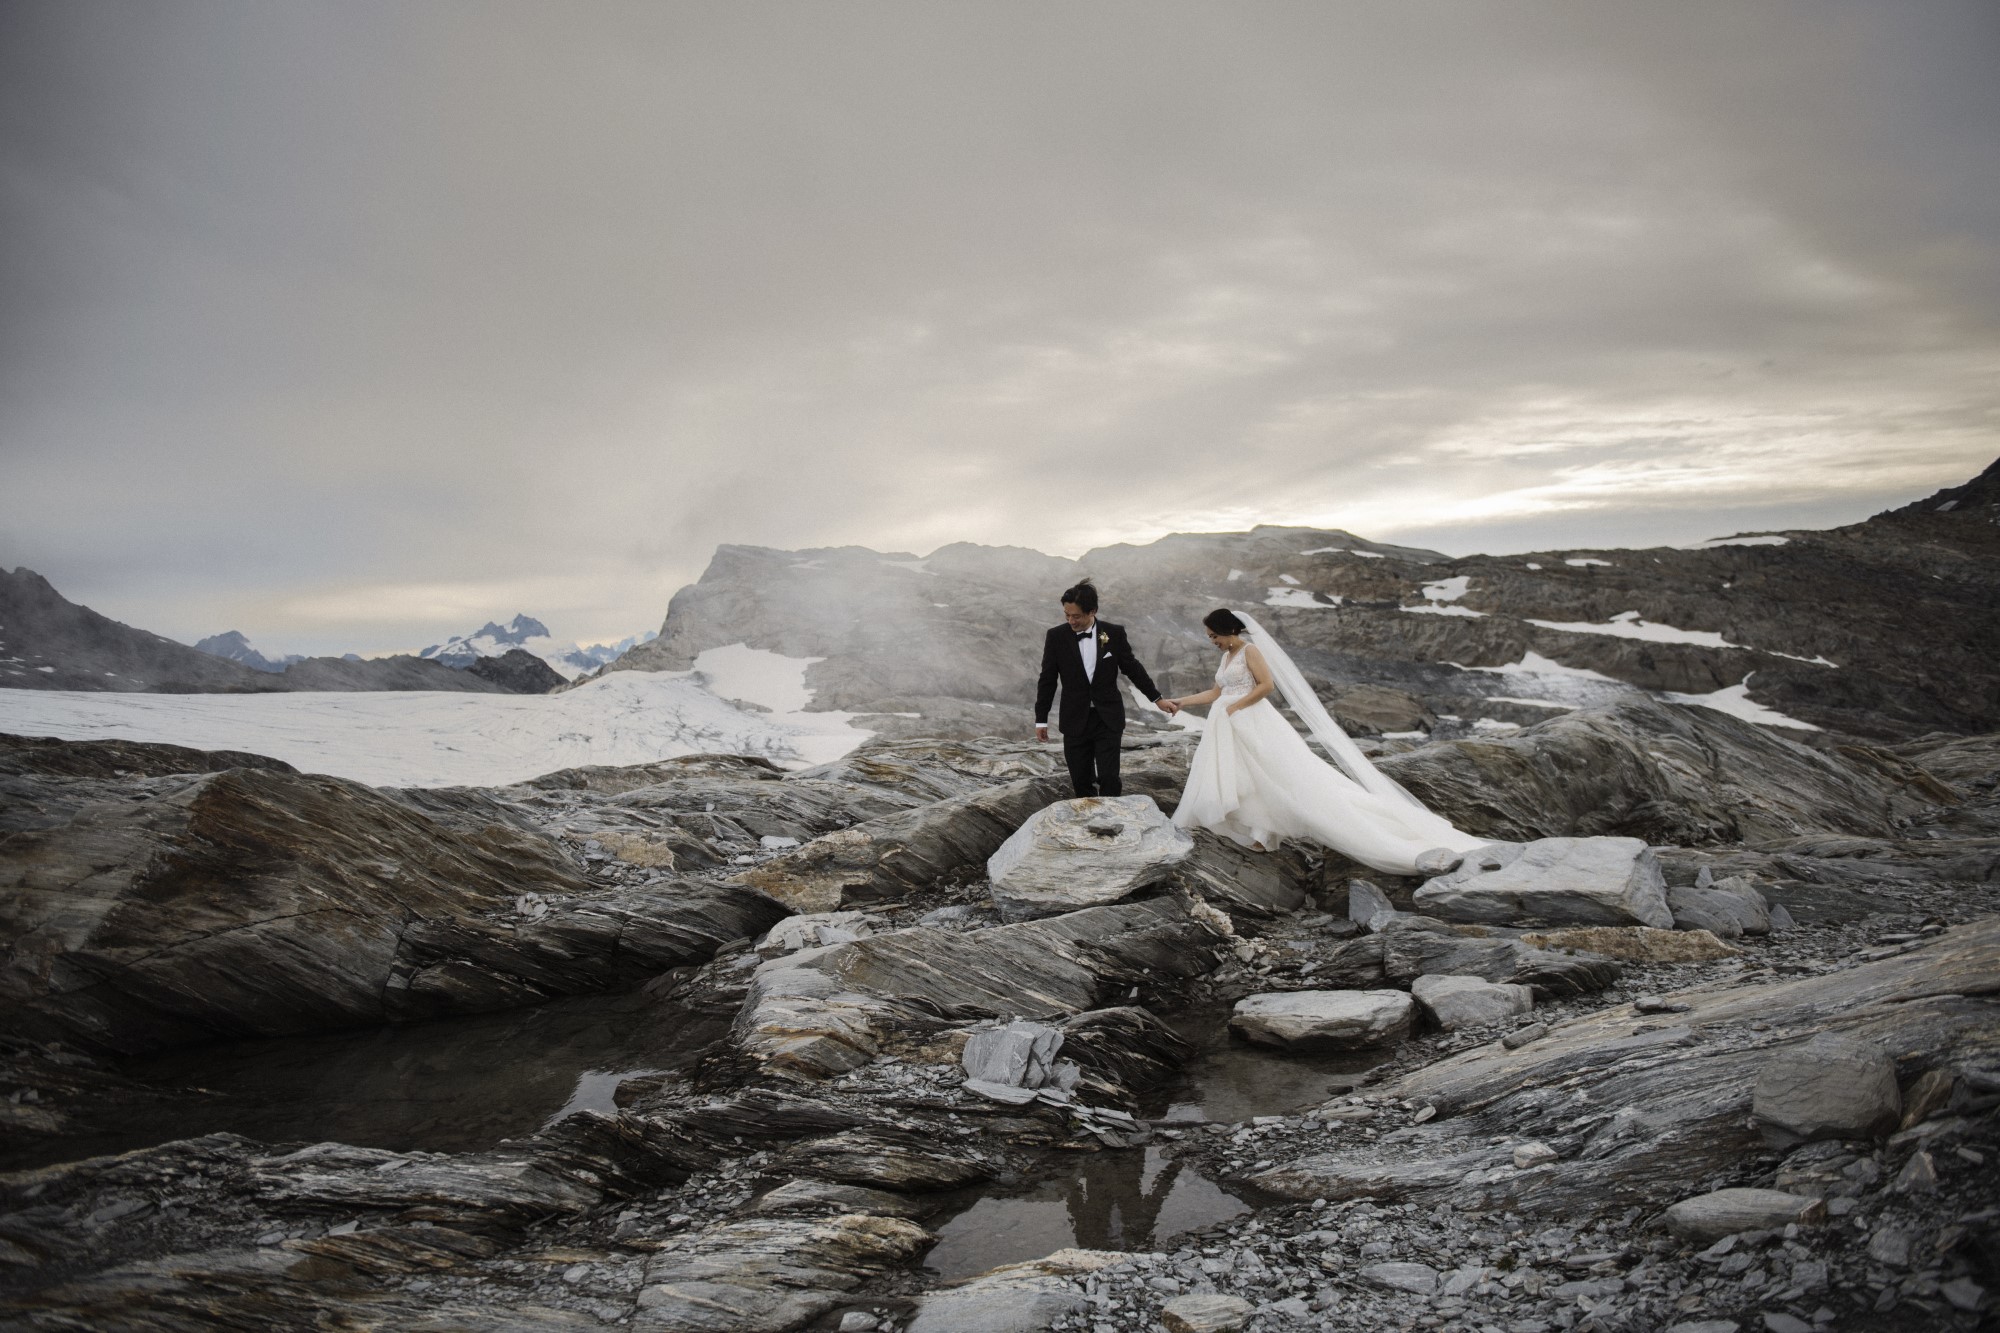 Newlyweds trek across rocky landscape